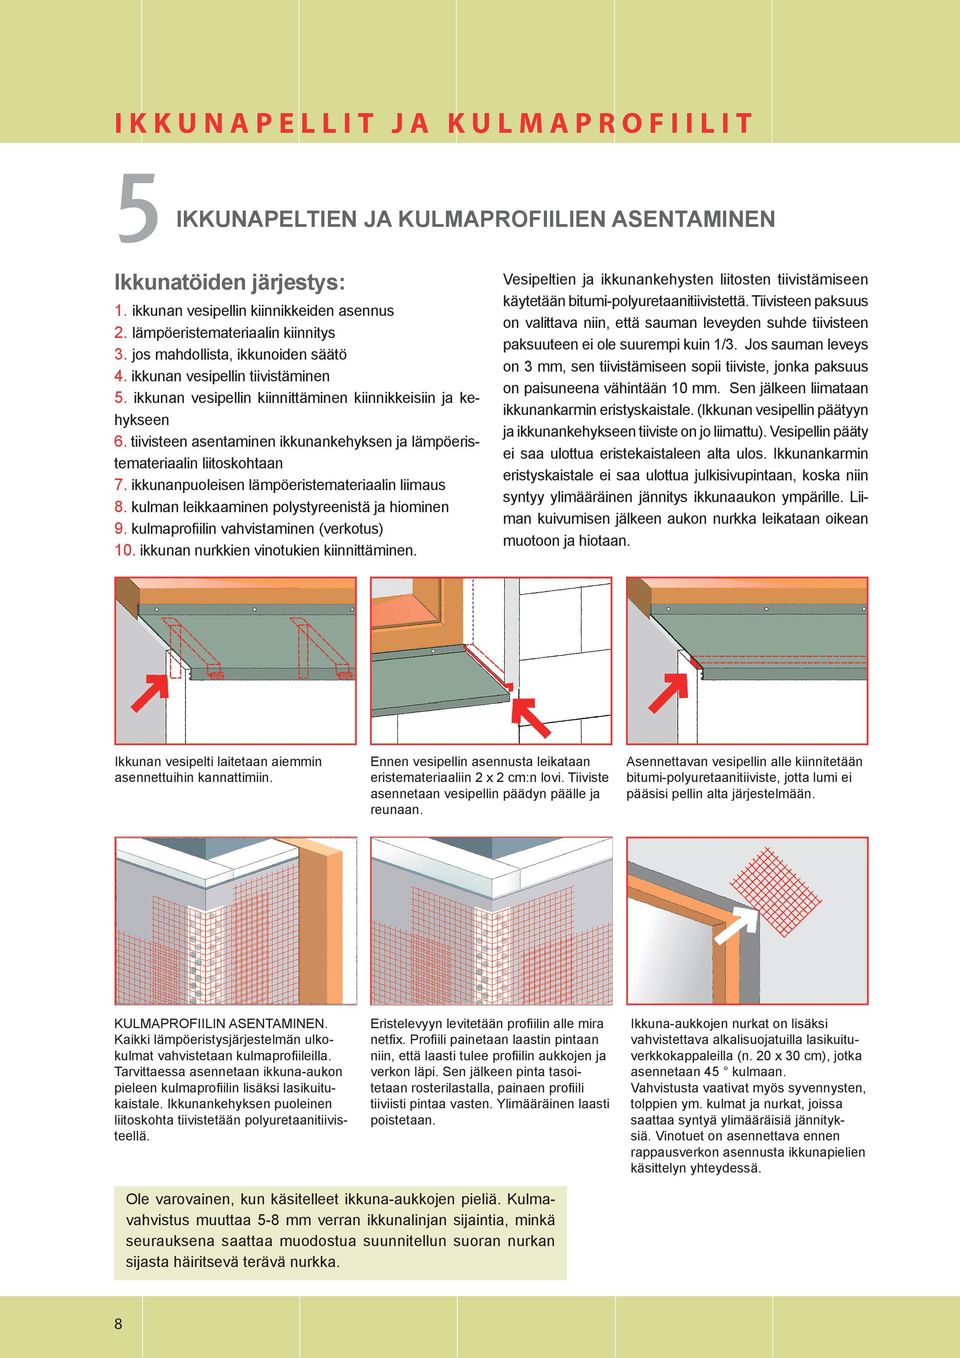 tiivisteen asentaminen ikkunankehyksen ja lämpöeristemateriaalin liitoskohtaan 7. ikkunanpuoleisen lämpöeristemateriaalin liimaus 8. kulman leikkaaminen polystyreenistä ja hiominen 9.